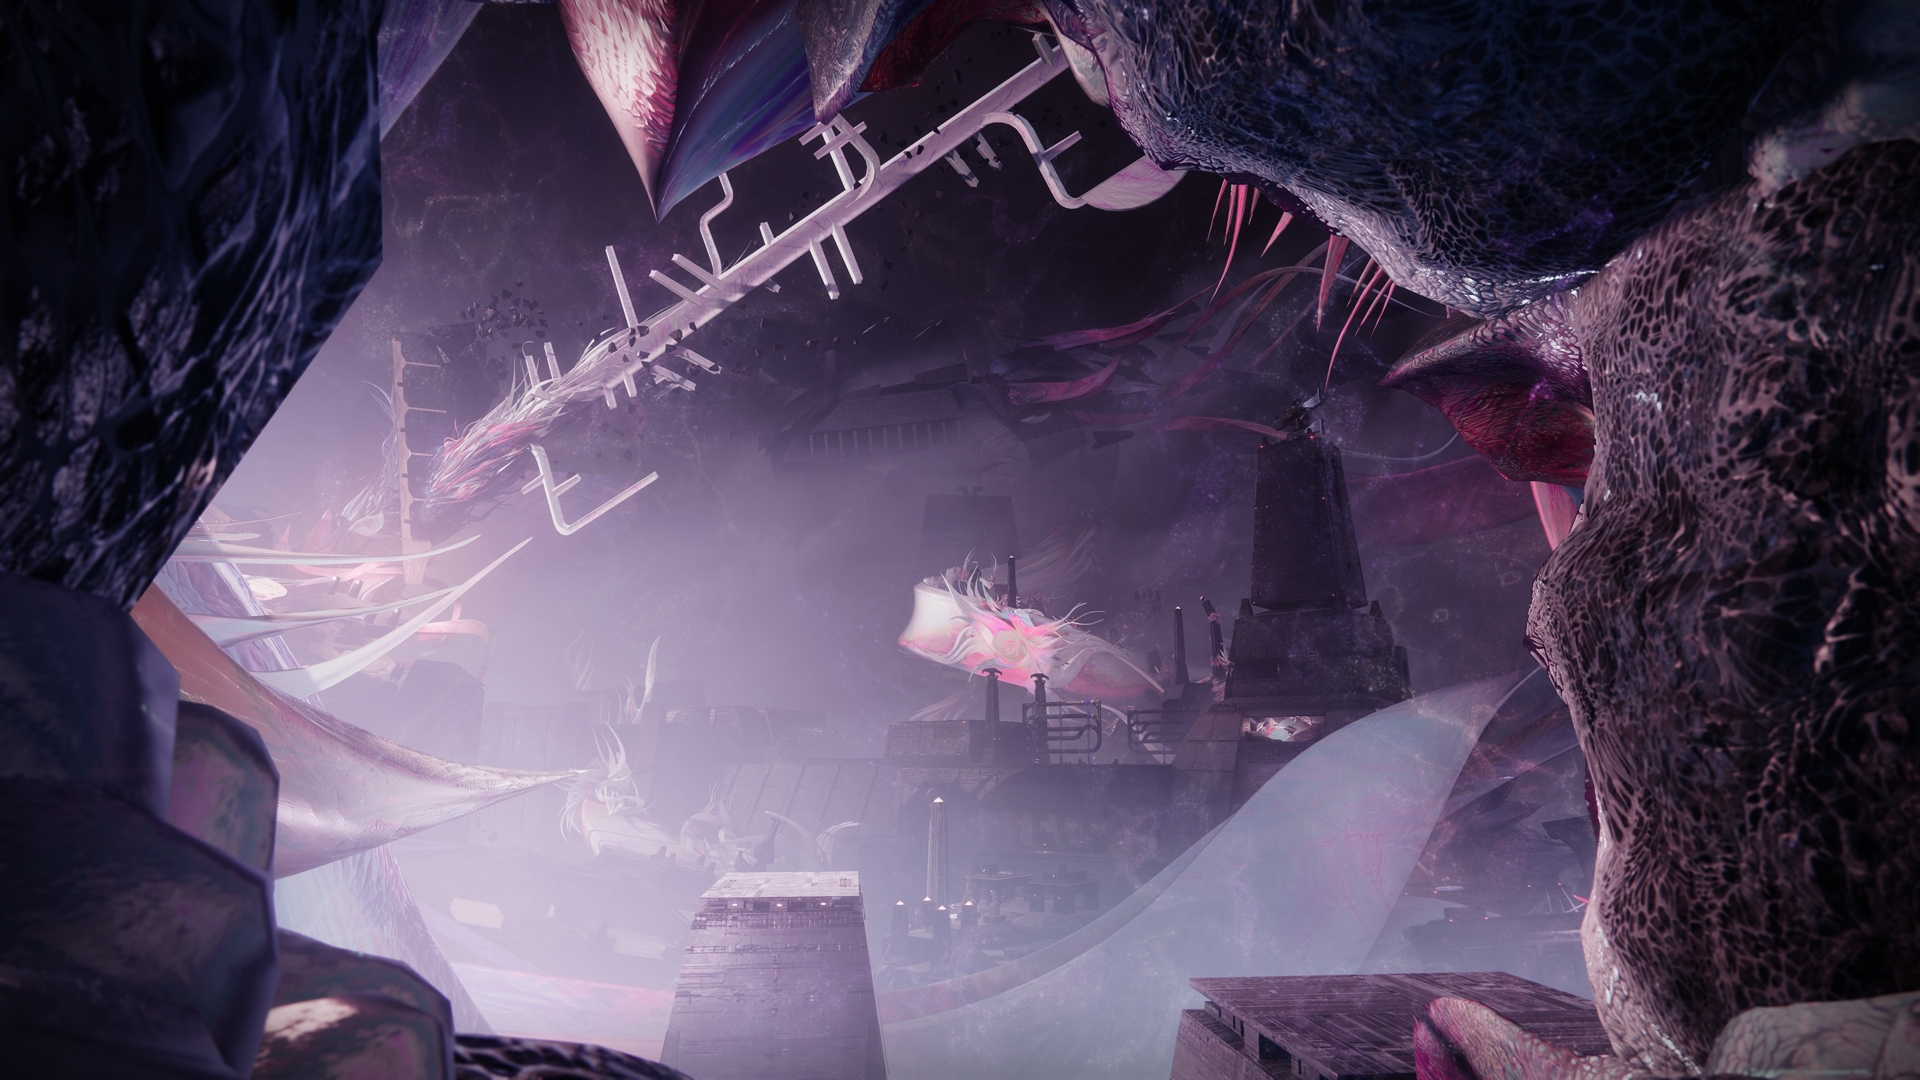 Destiny 2's Lance Reddick has more “performances yet to come”